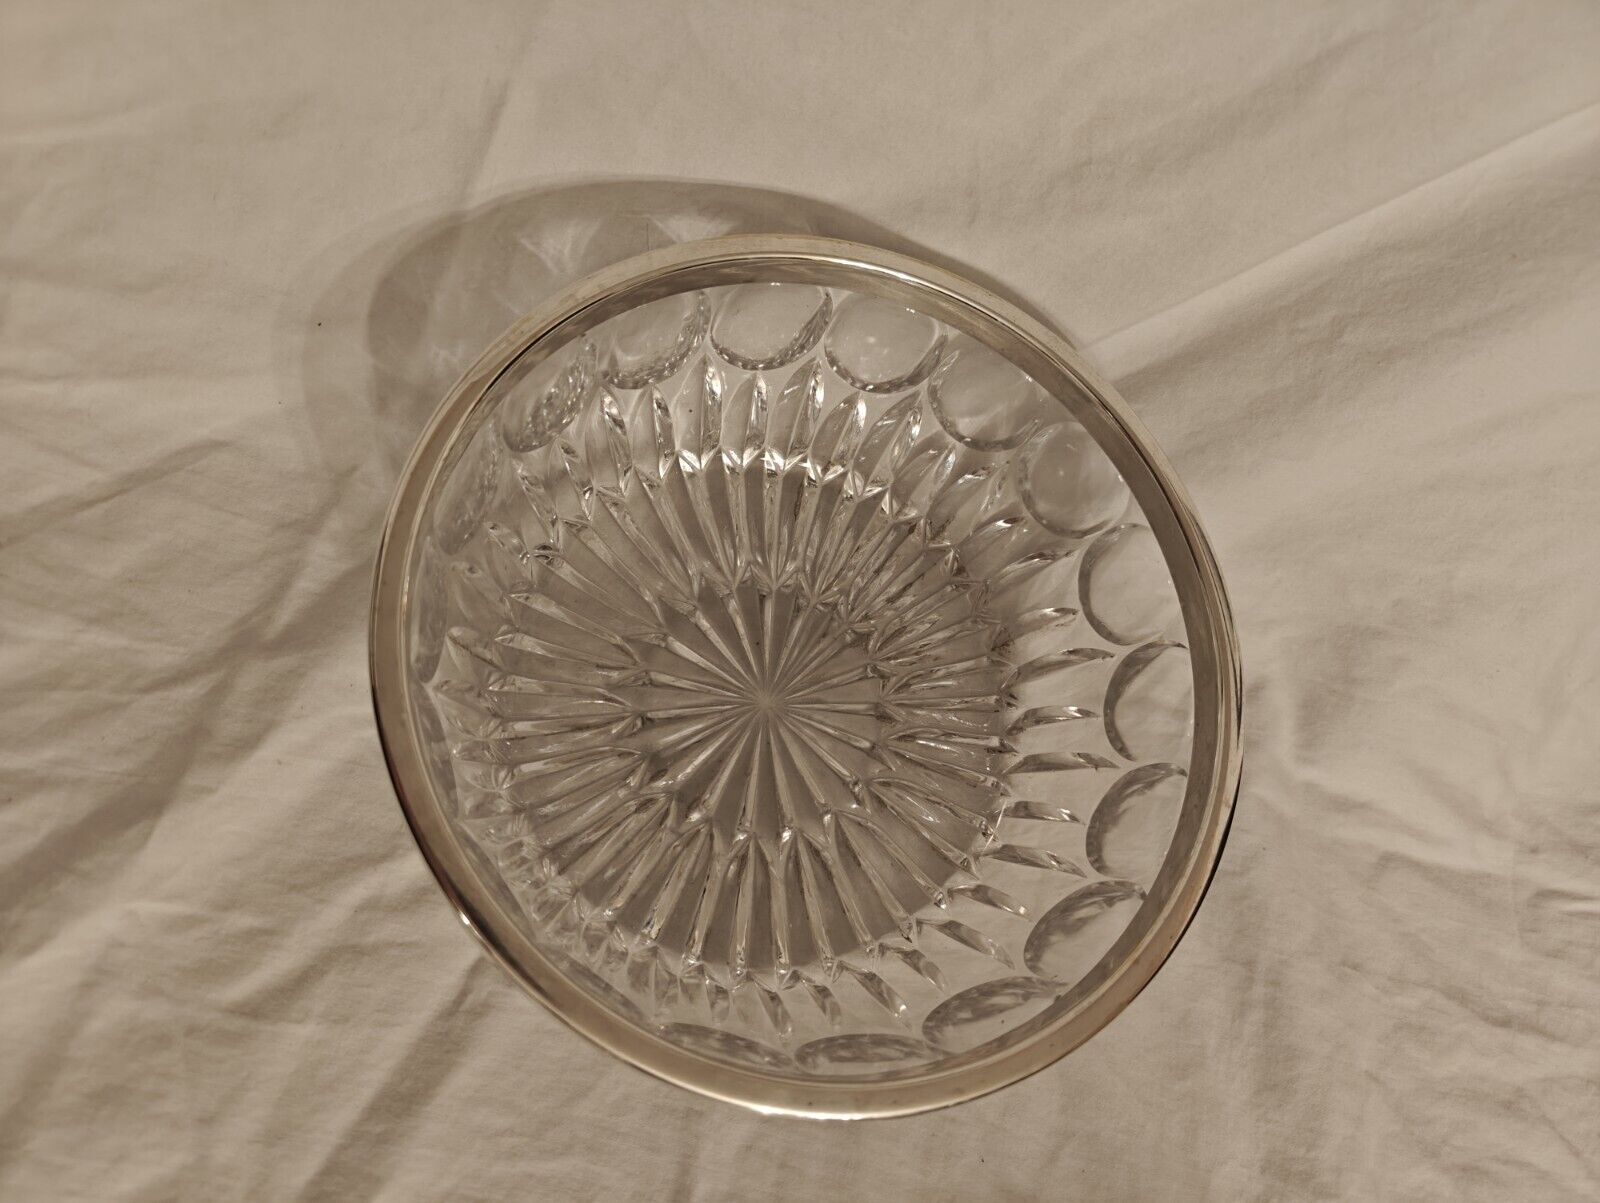 Vintage Leonard Crystal Servng Bowl with Silver Rim